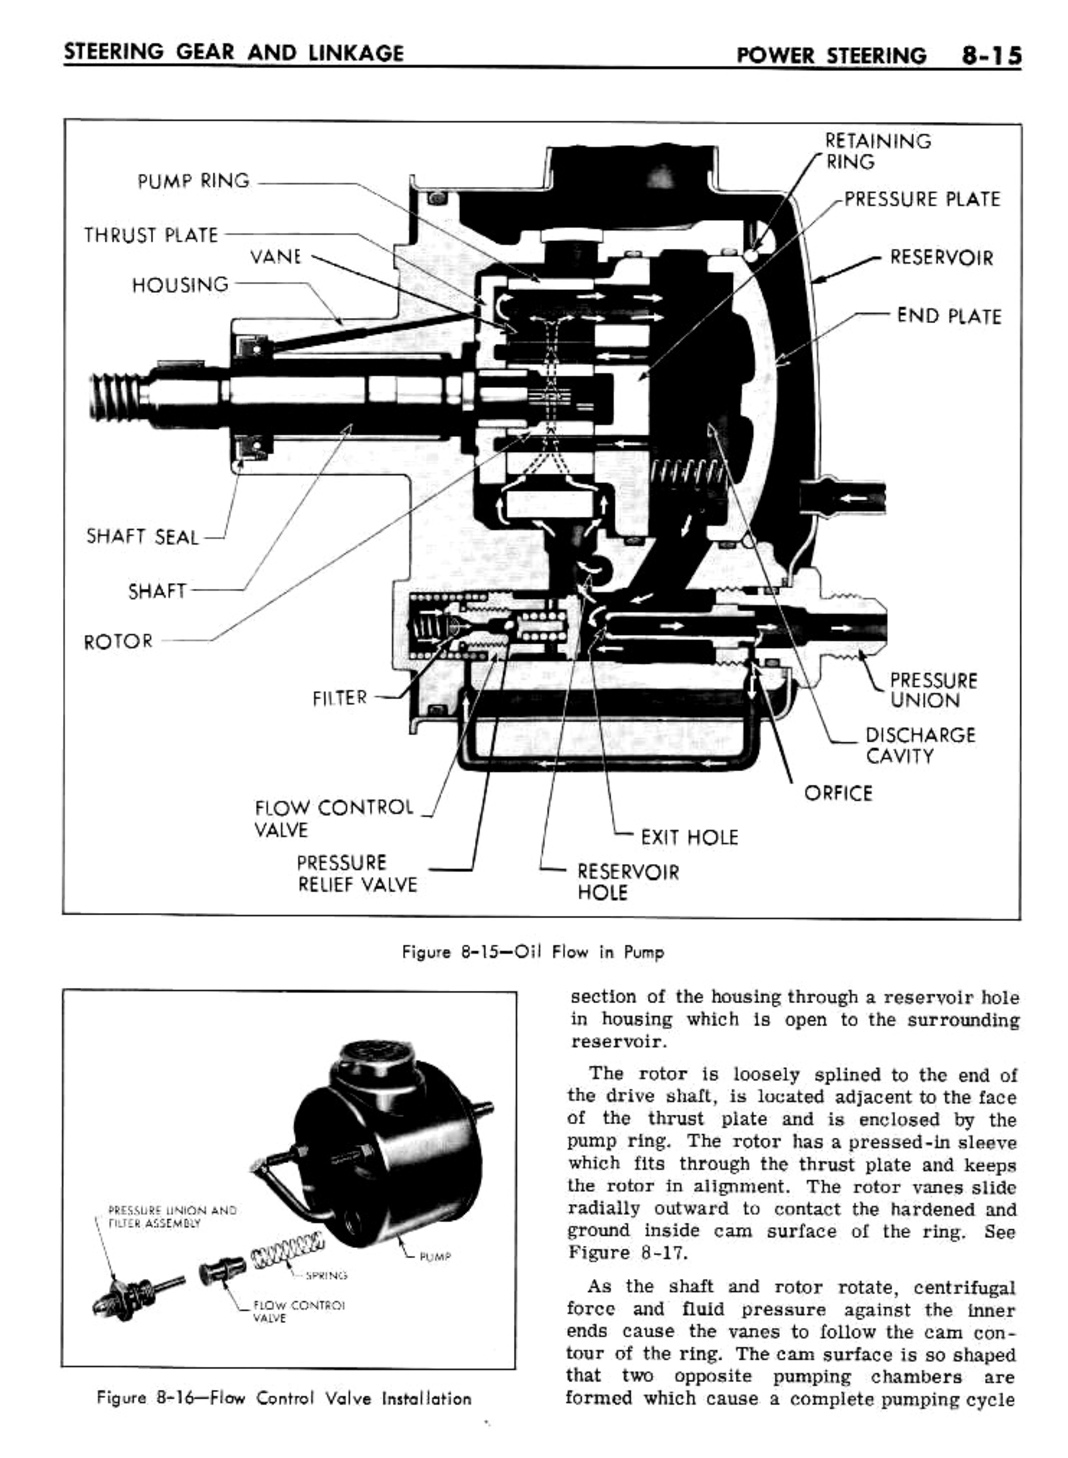 n_08 1961 Buick Shop Manual - Steering-015-015.jpg